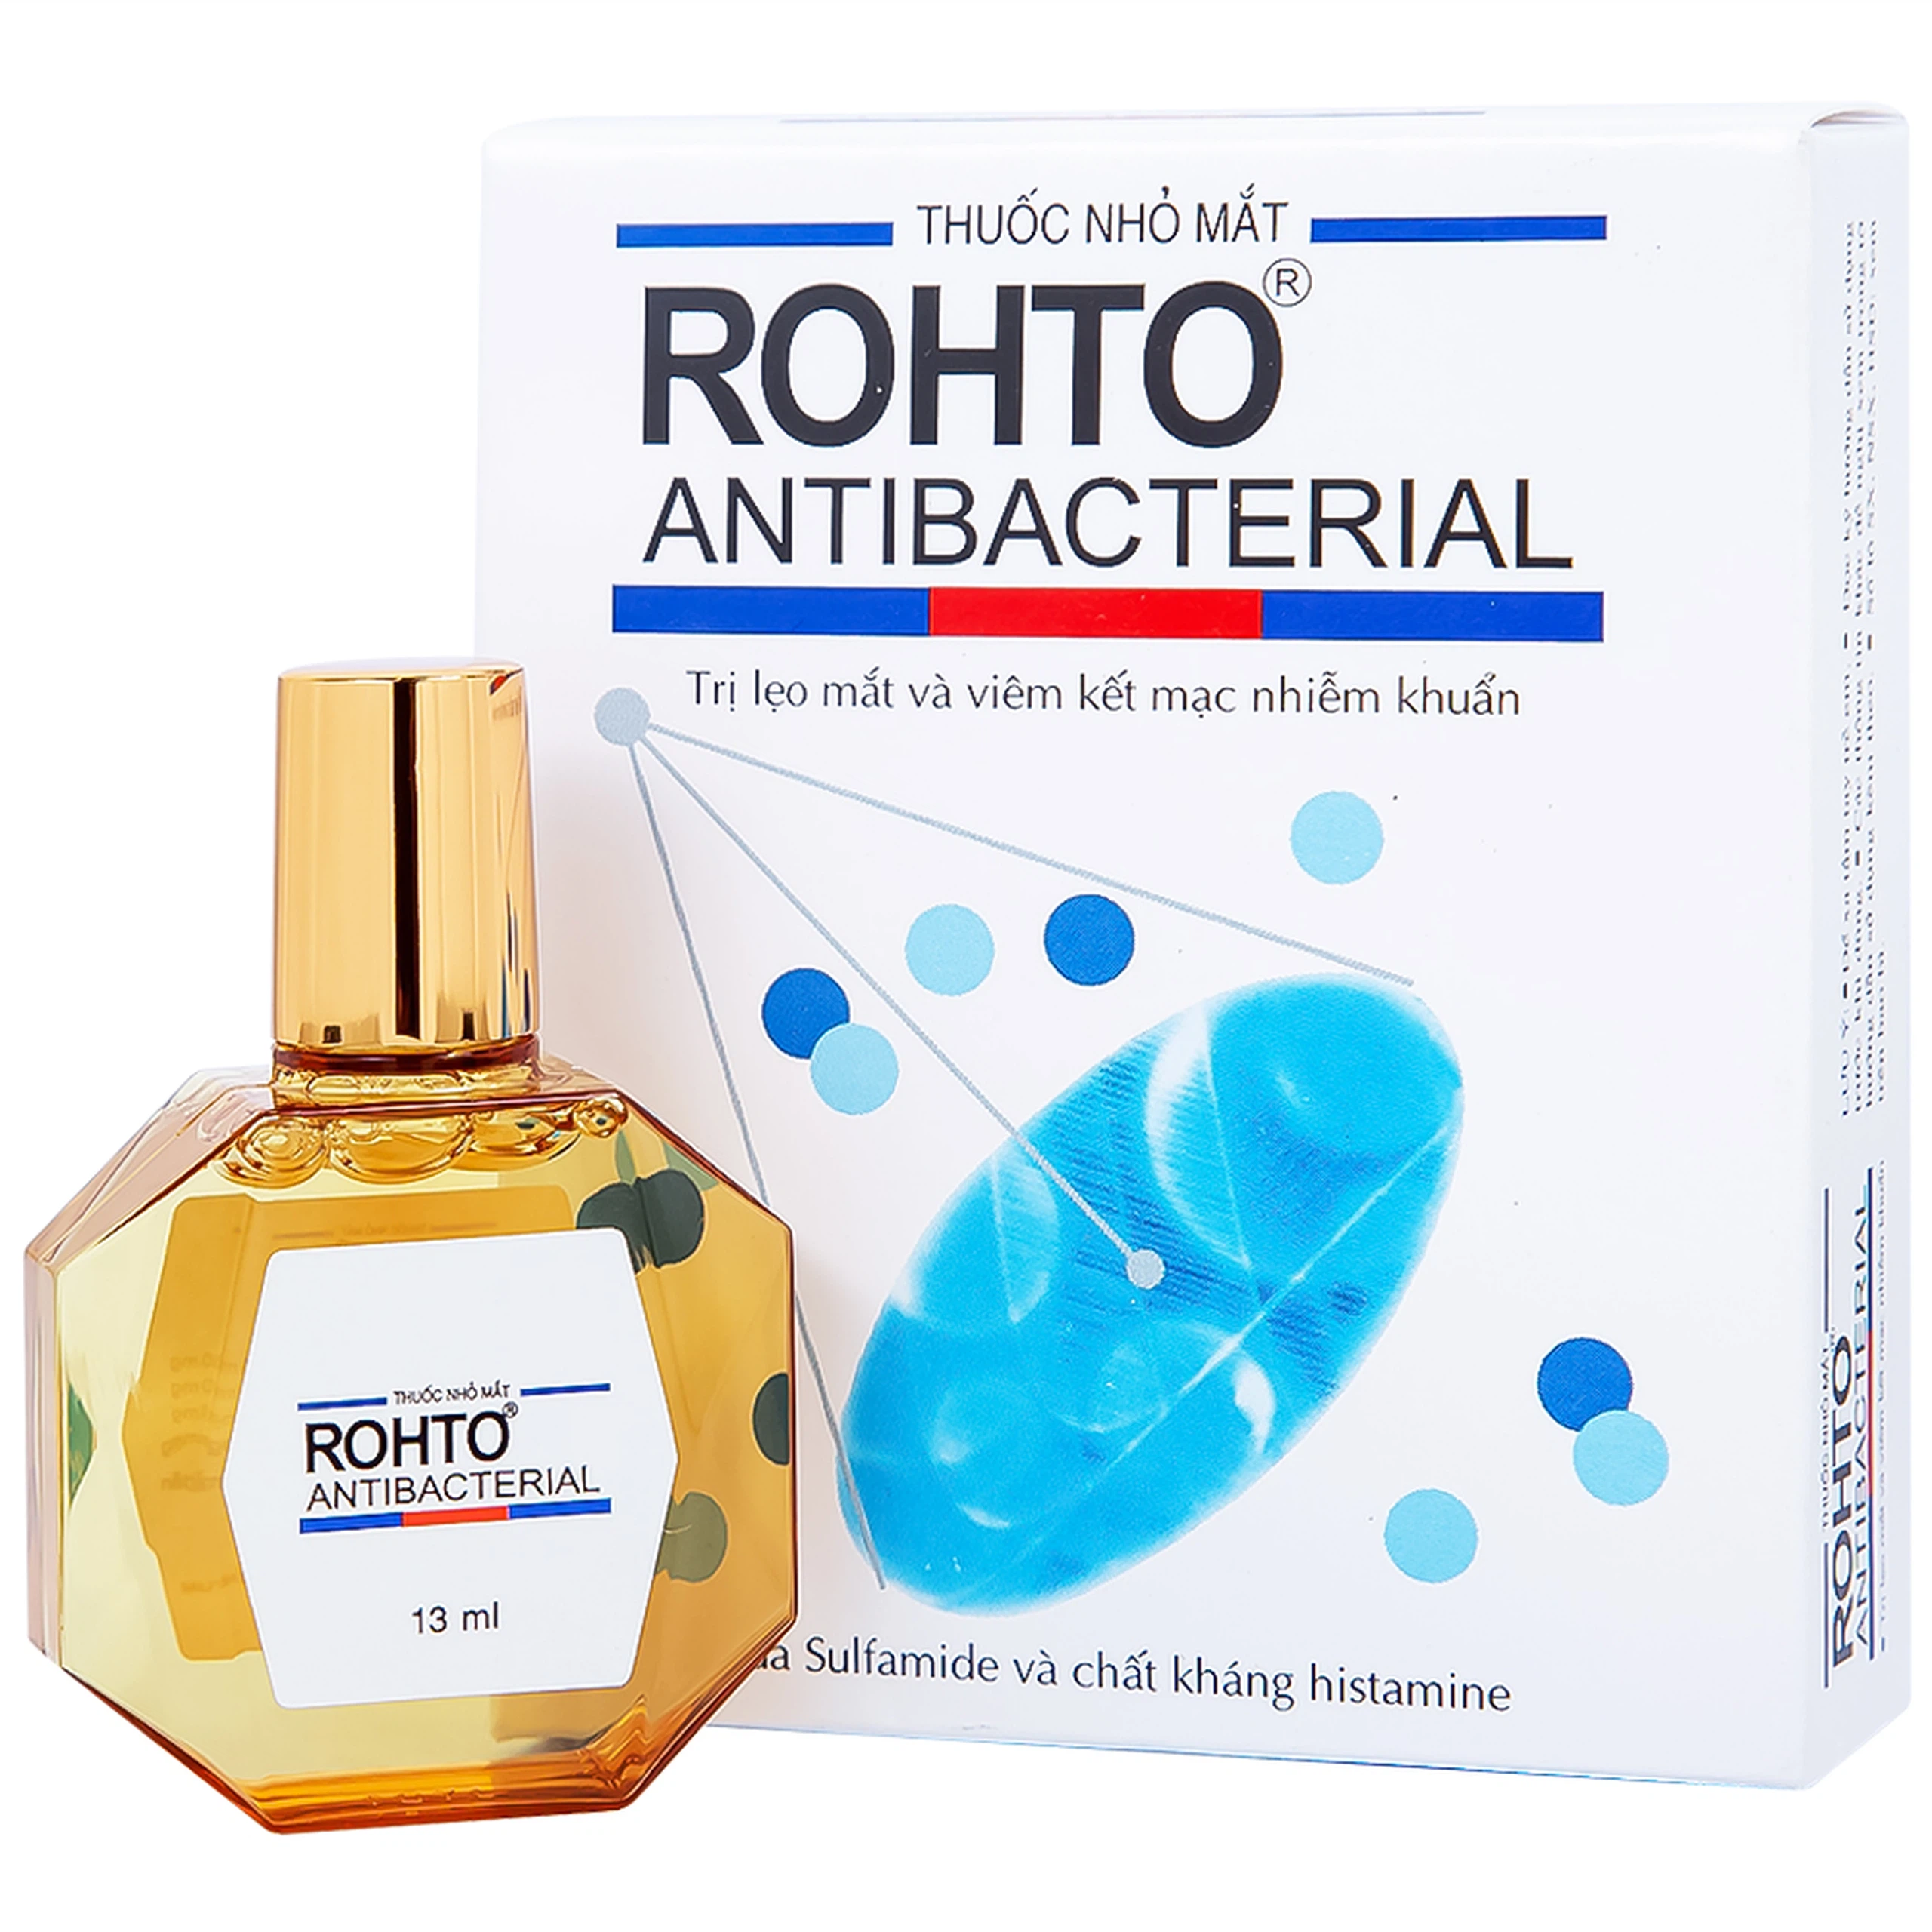 Thuốc nhỏ mắt Rohto Antibacterial điều trị lẹo mắt, viêm kết mạc, viêm mi mắt (13ml)